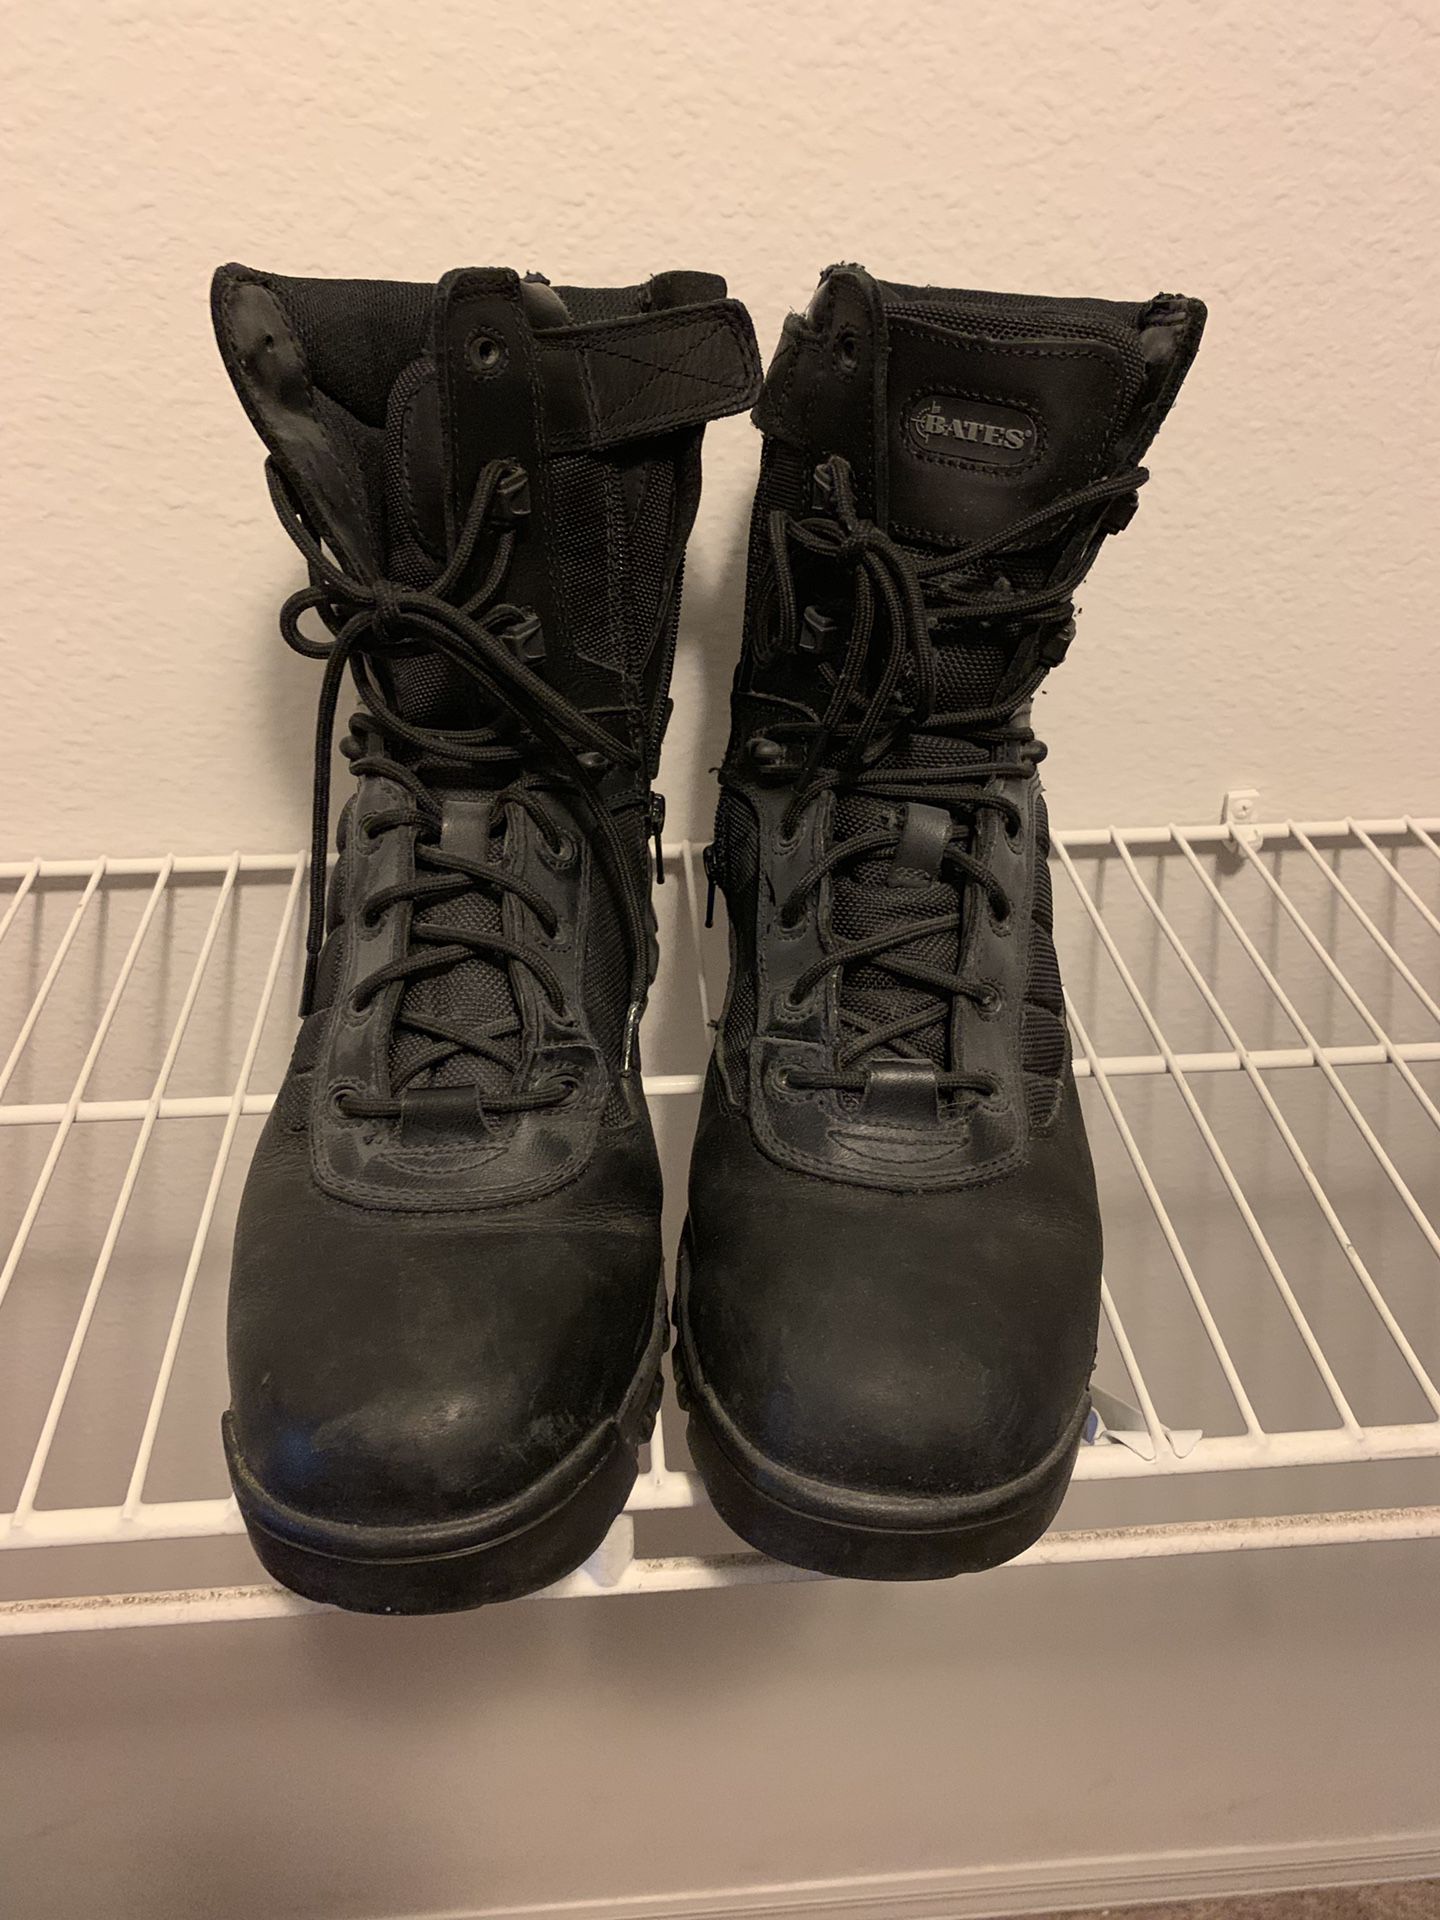 Men’s size 11 boots Bates